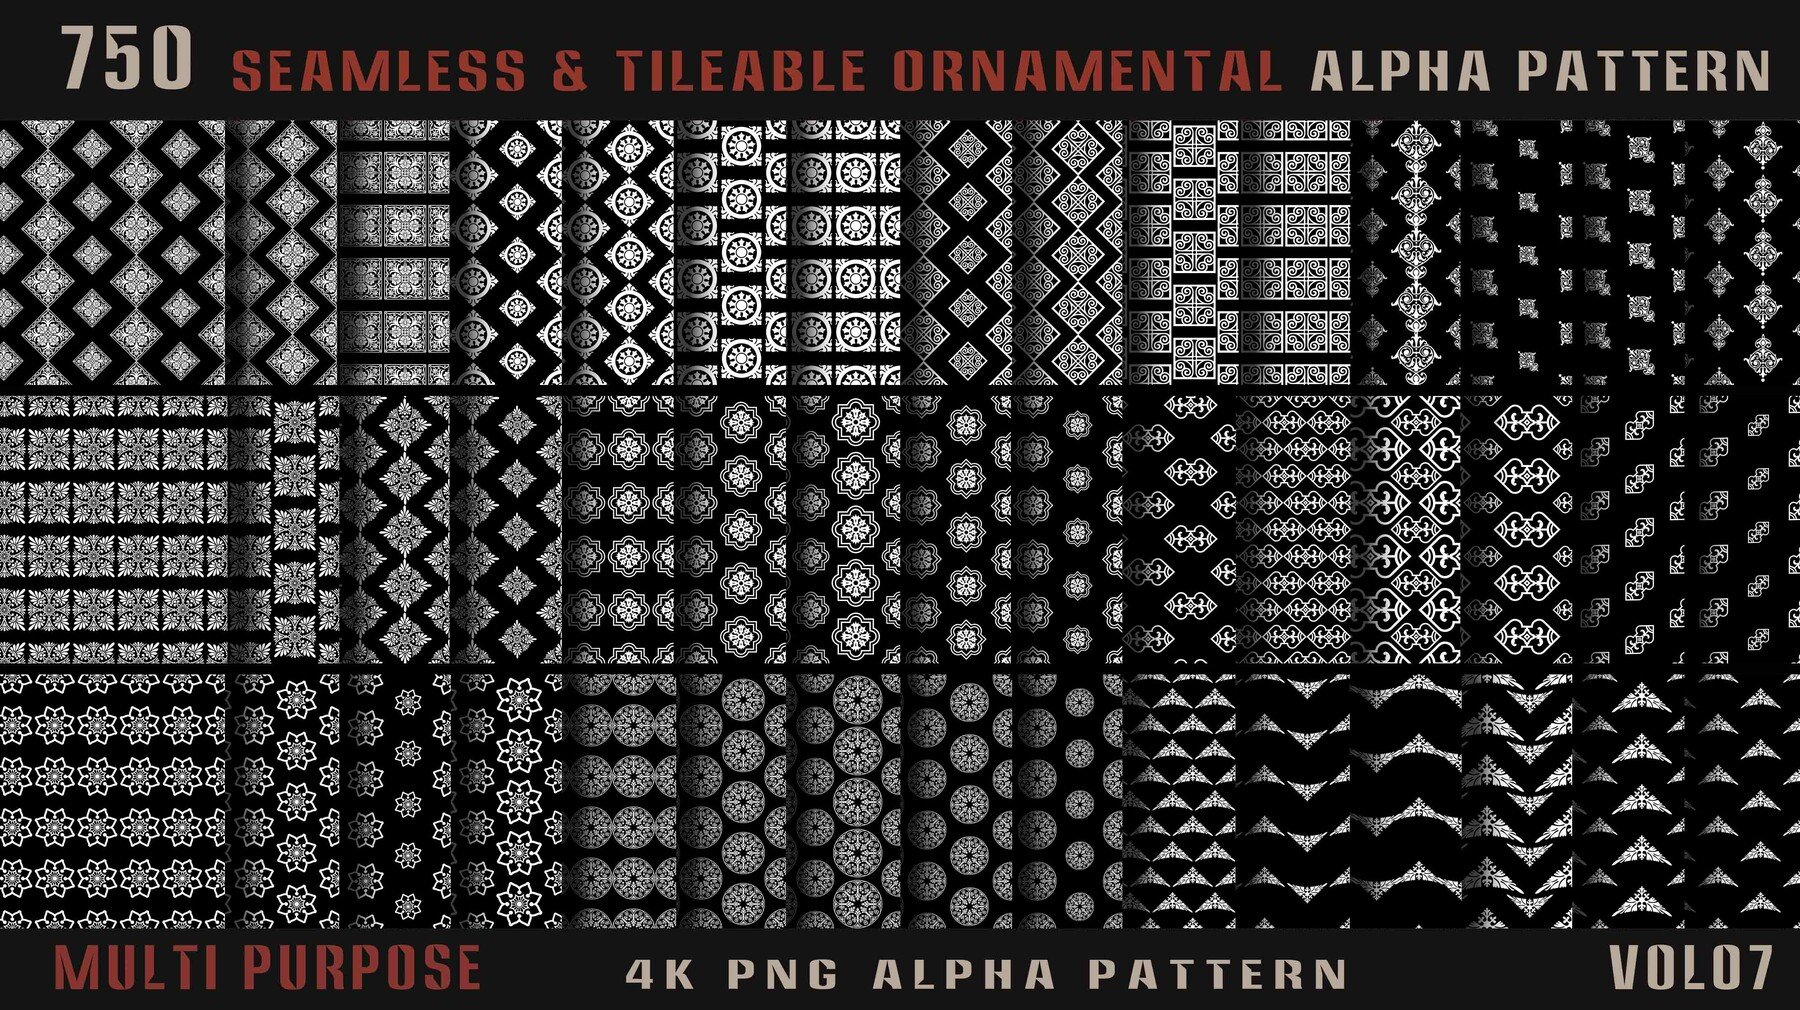 4437 750组武器无缝图案4k高清装饰花纹Alpha贴图合集 750 seamless & tileable ornamental alpha pattern + (50 free) -Vol07